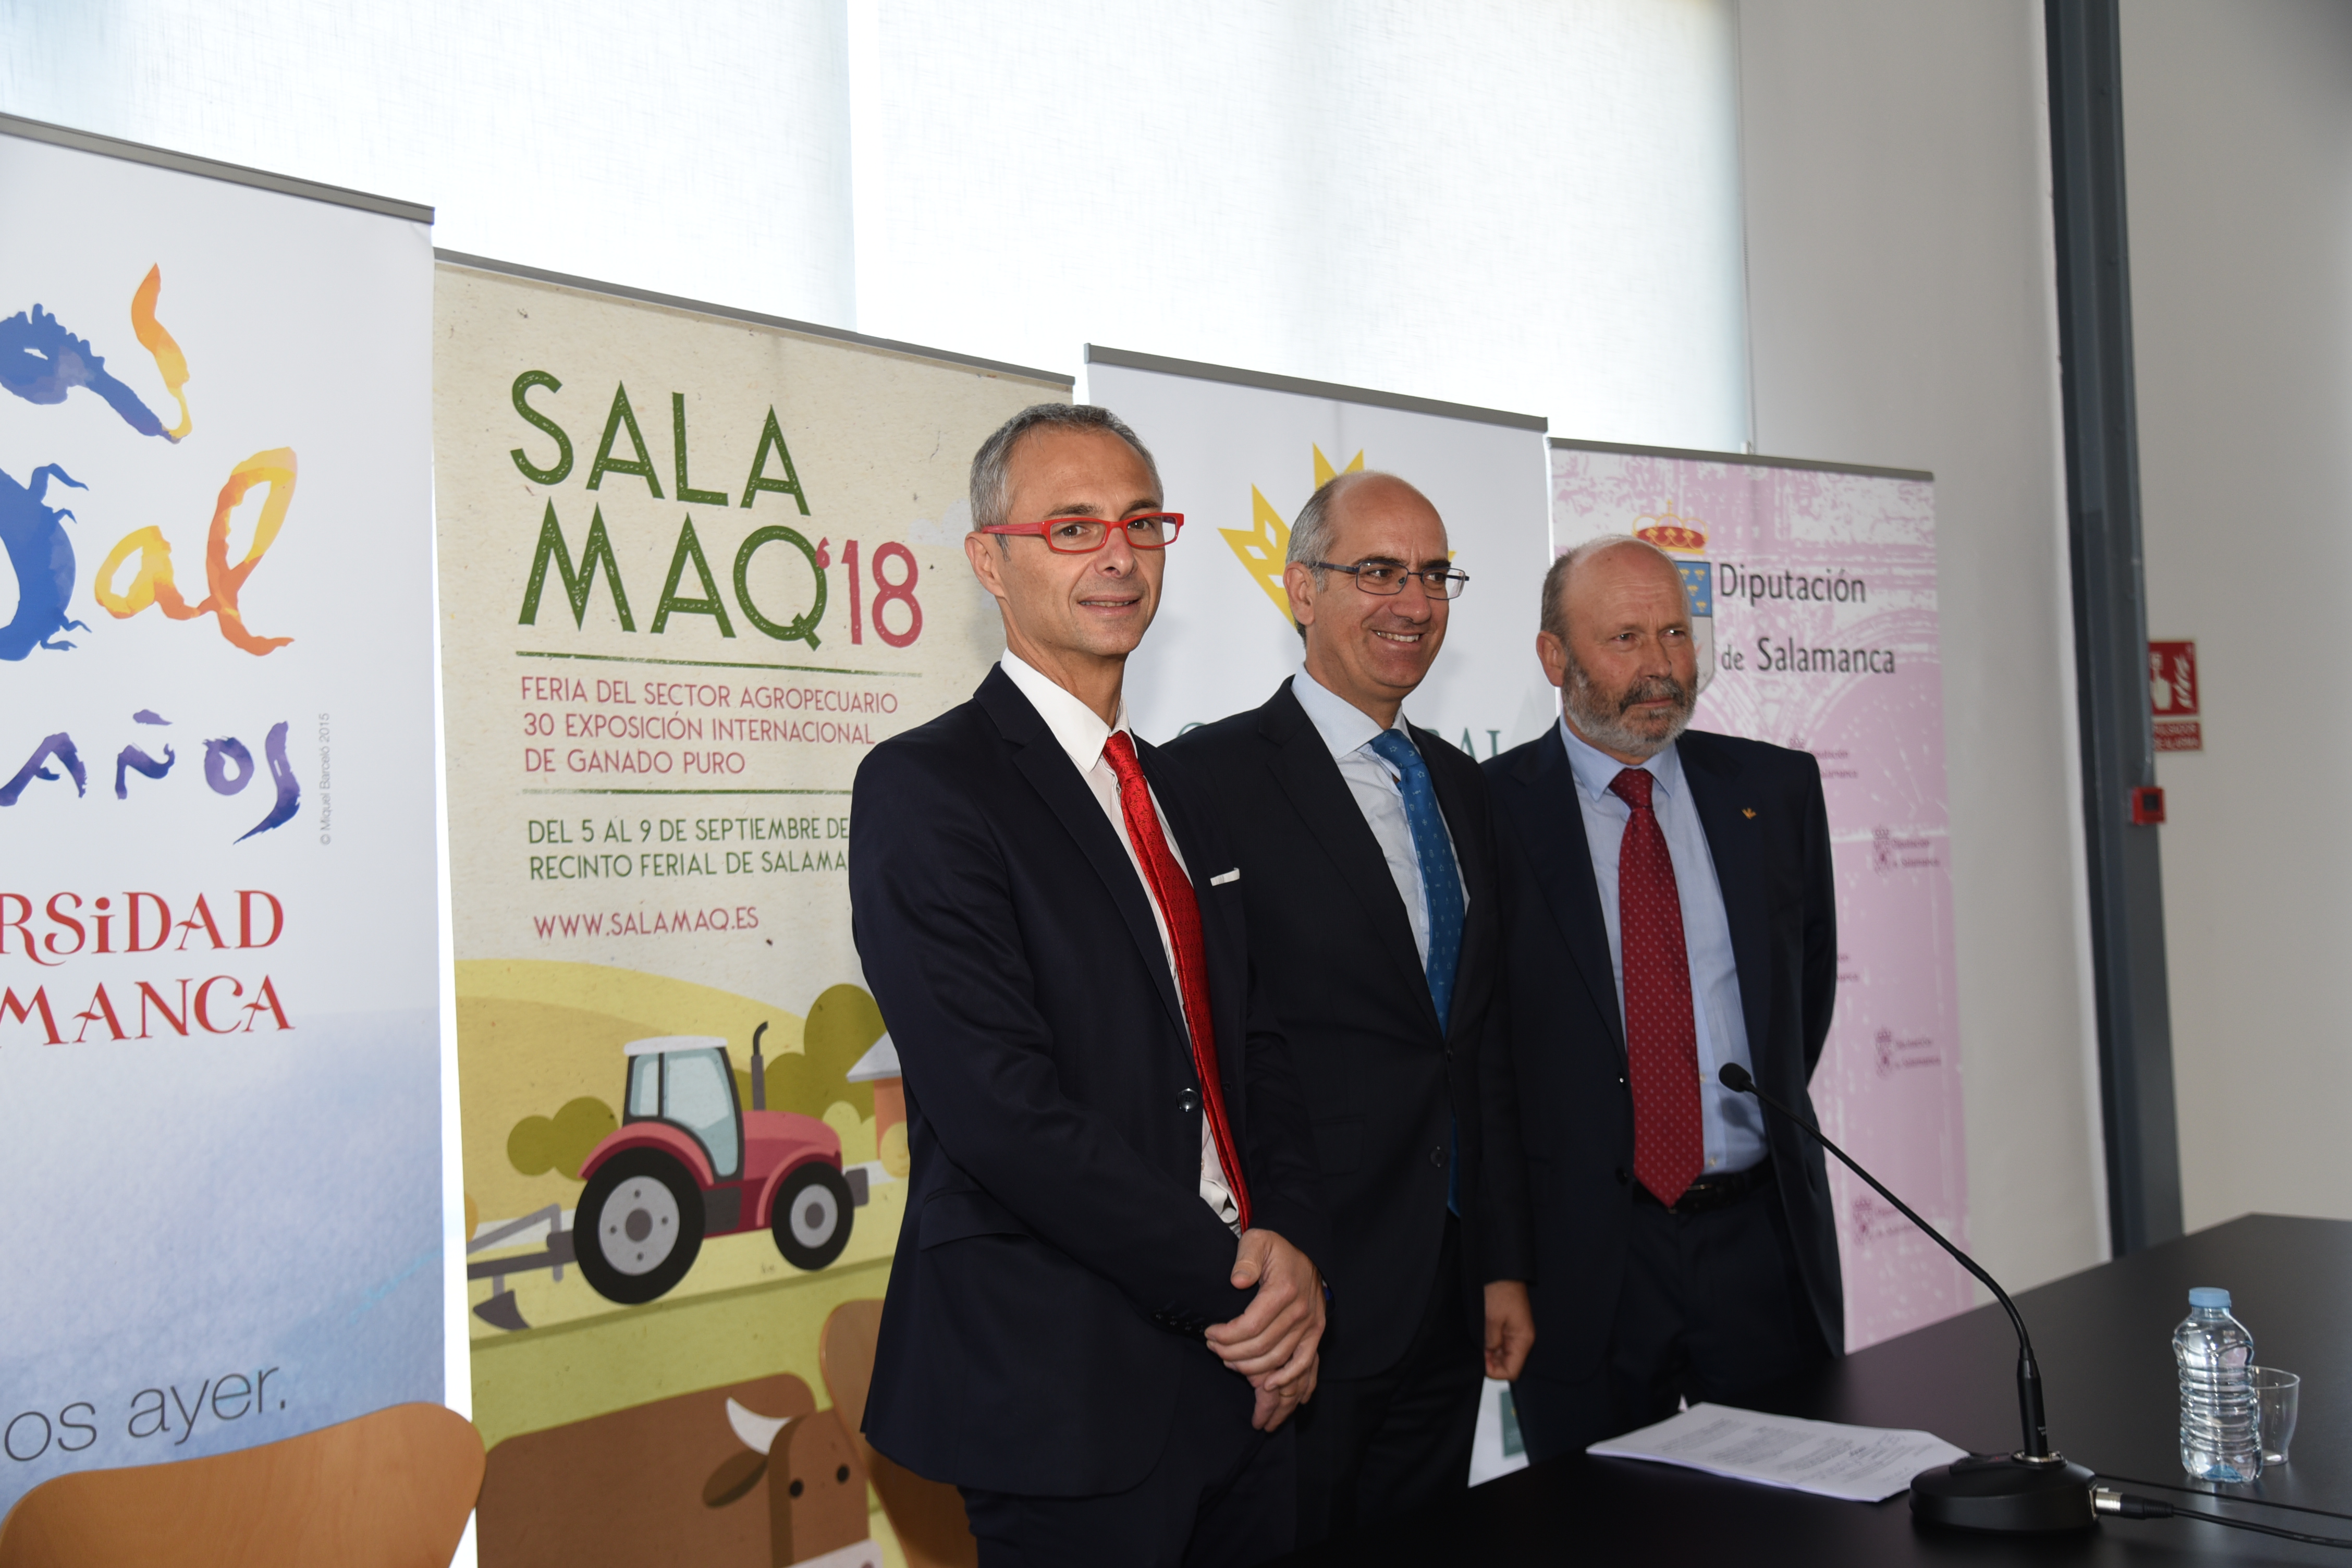  Presentan en SALAMAQ’18 los trabajos de la II Convocatoria de Proyectos de Investigación orientados a ofrecer soluciones tecnológicas al sector primario auspiciada por USAL, Diputación y Caja Rural Salamanca 